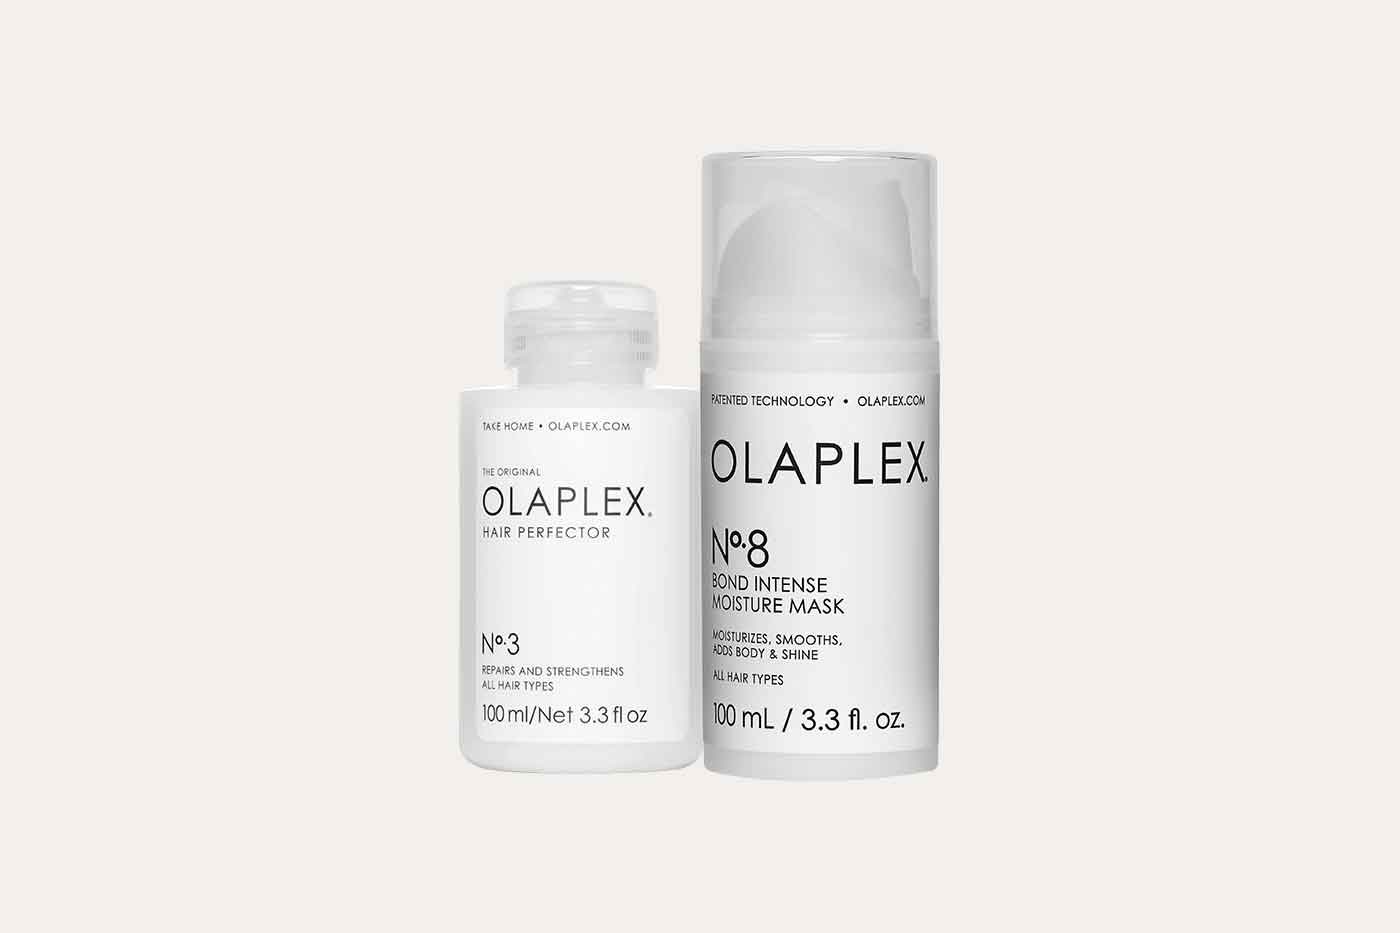 Treating damaged and frizzy hair with OLAPLEX Nº.3 Hair Perfector